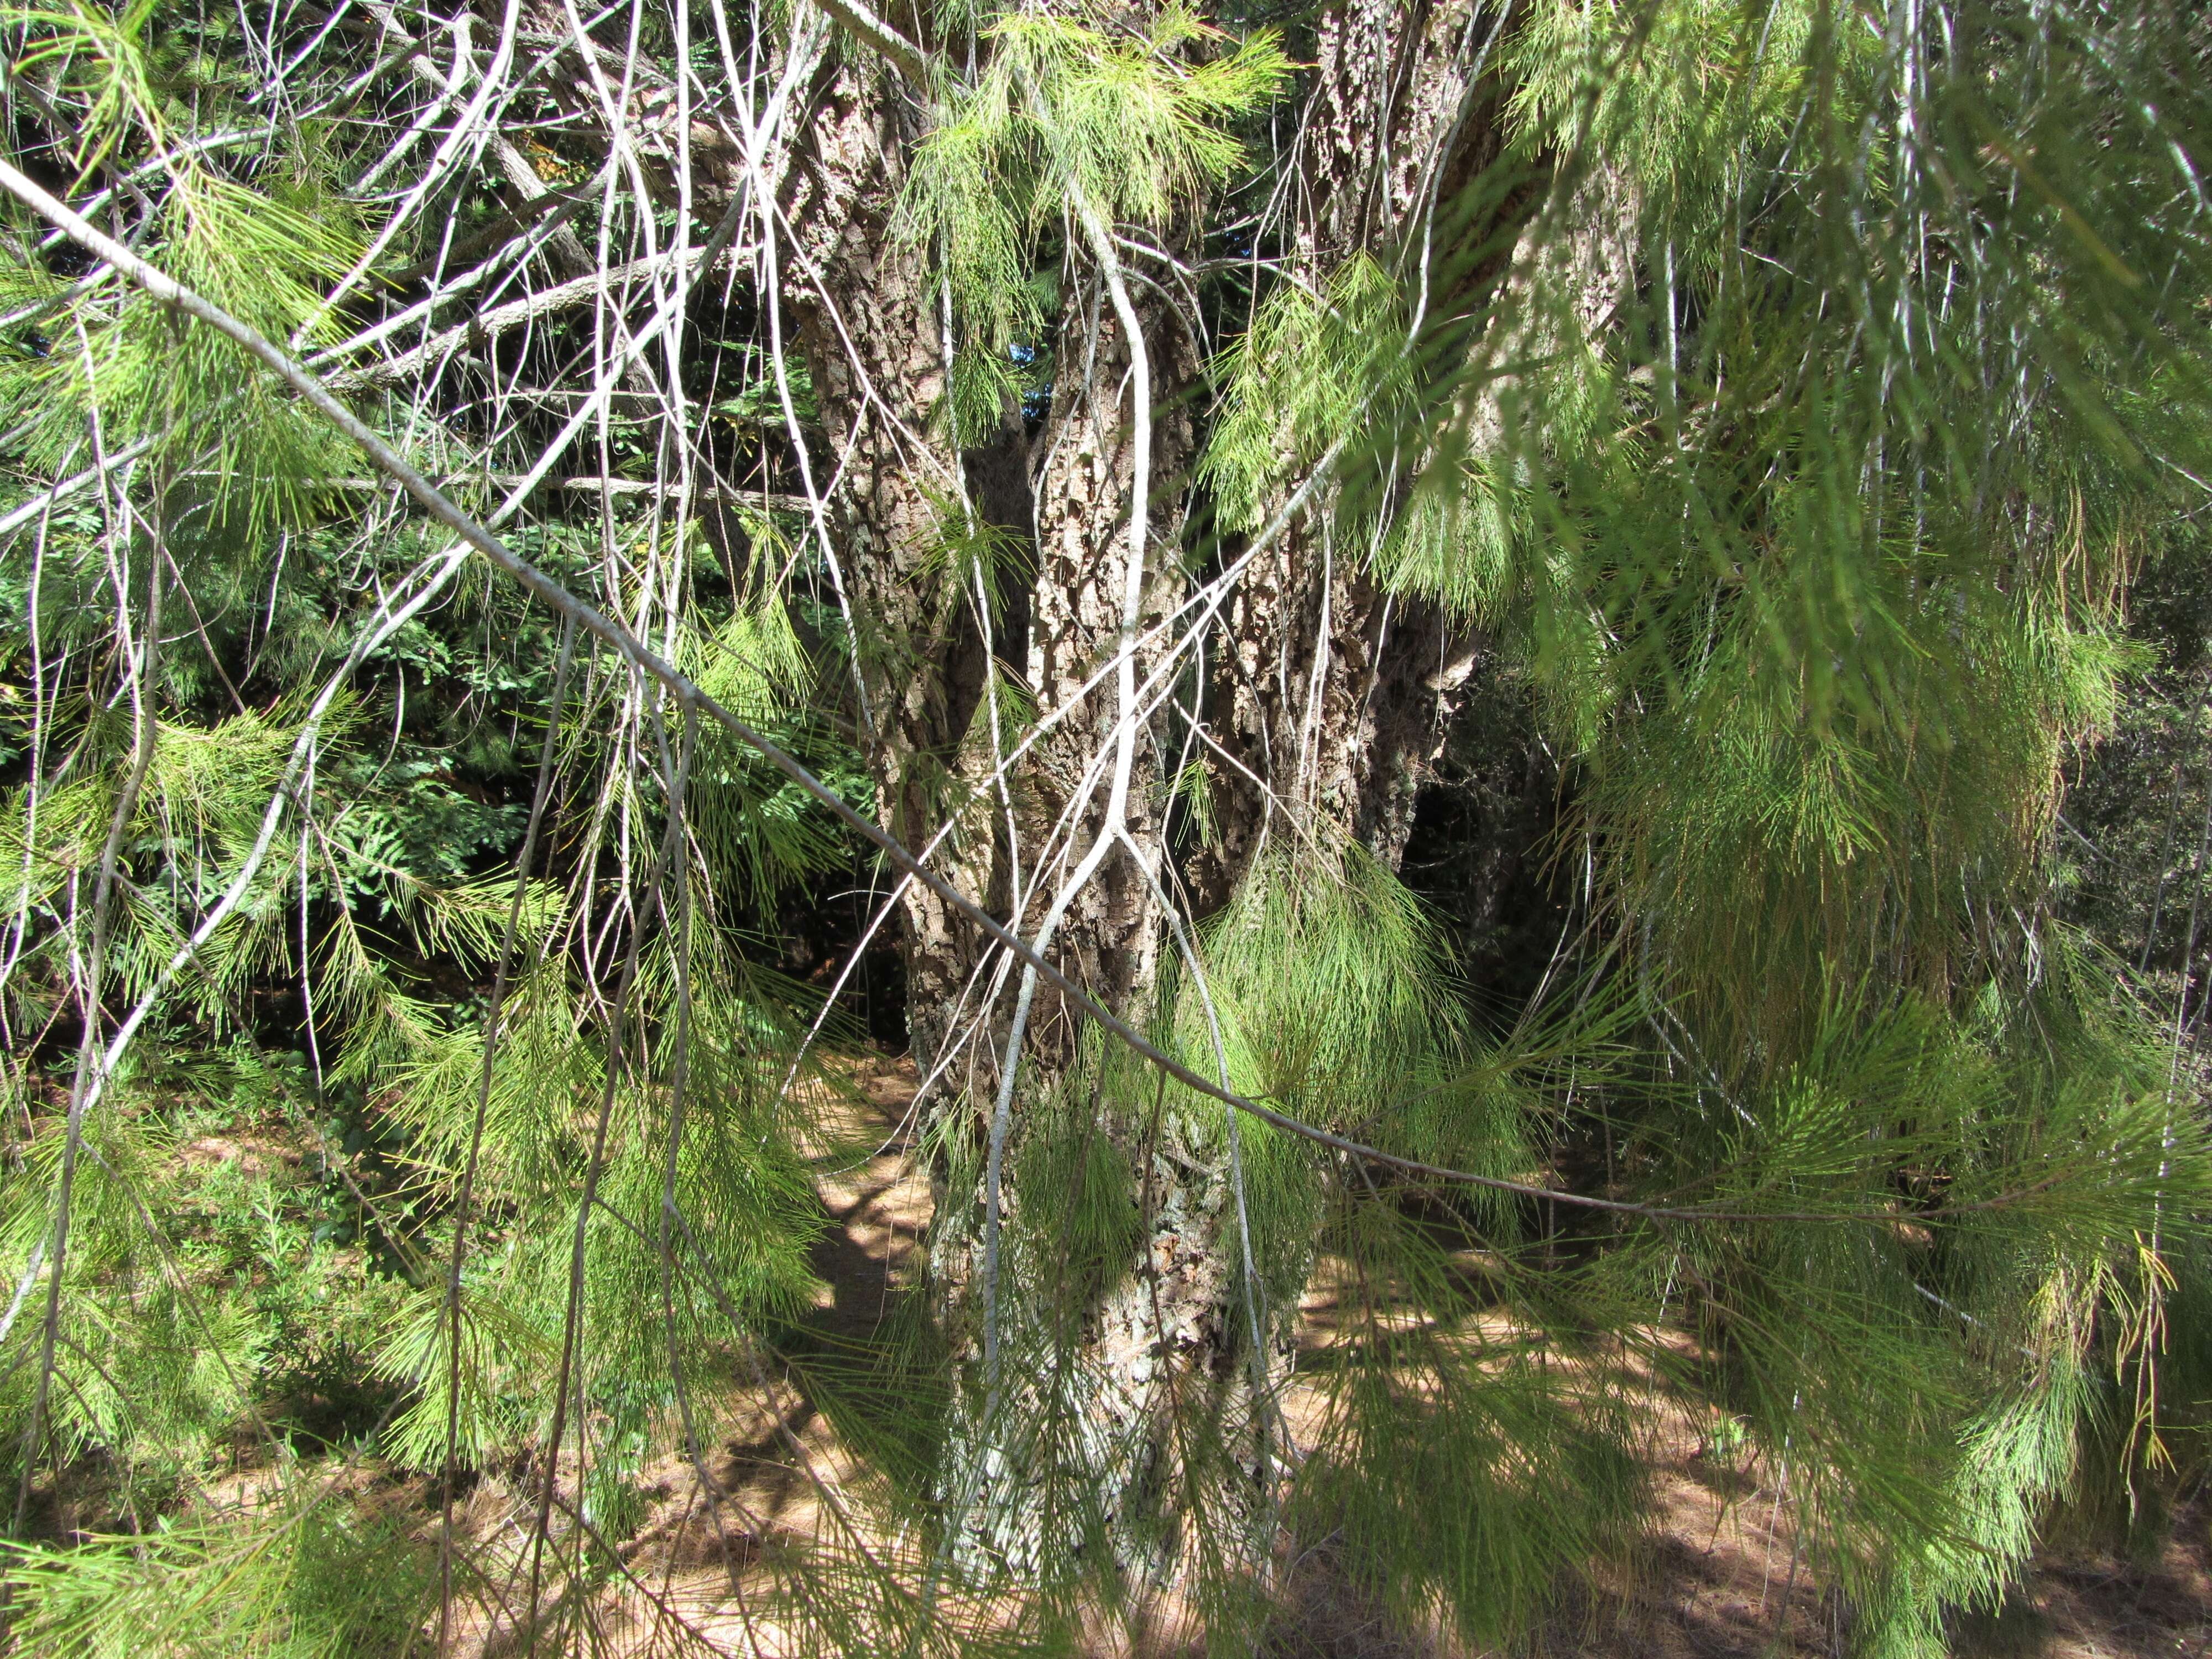 Image of forest-oak